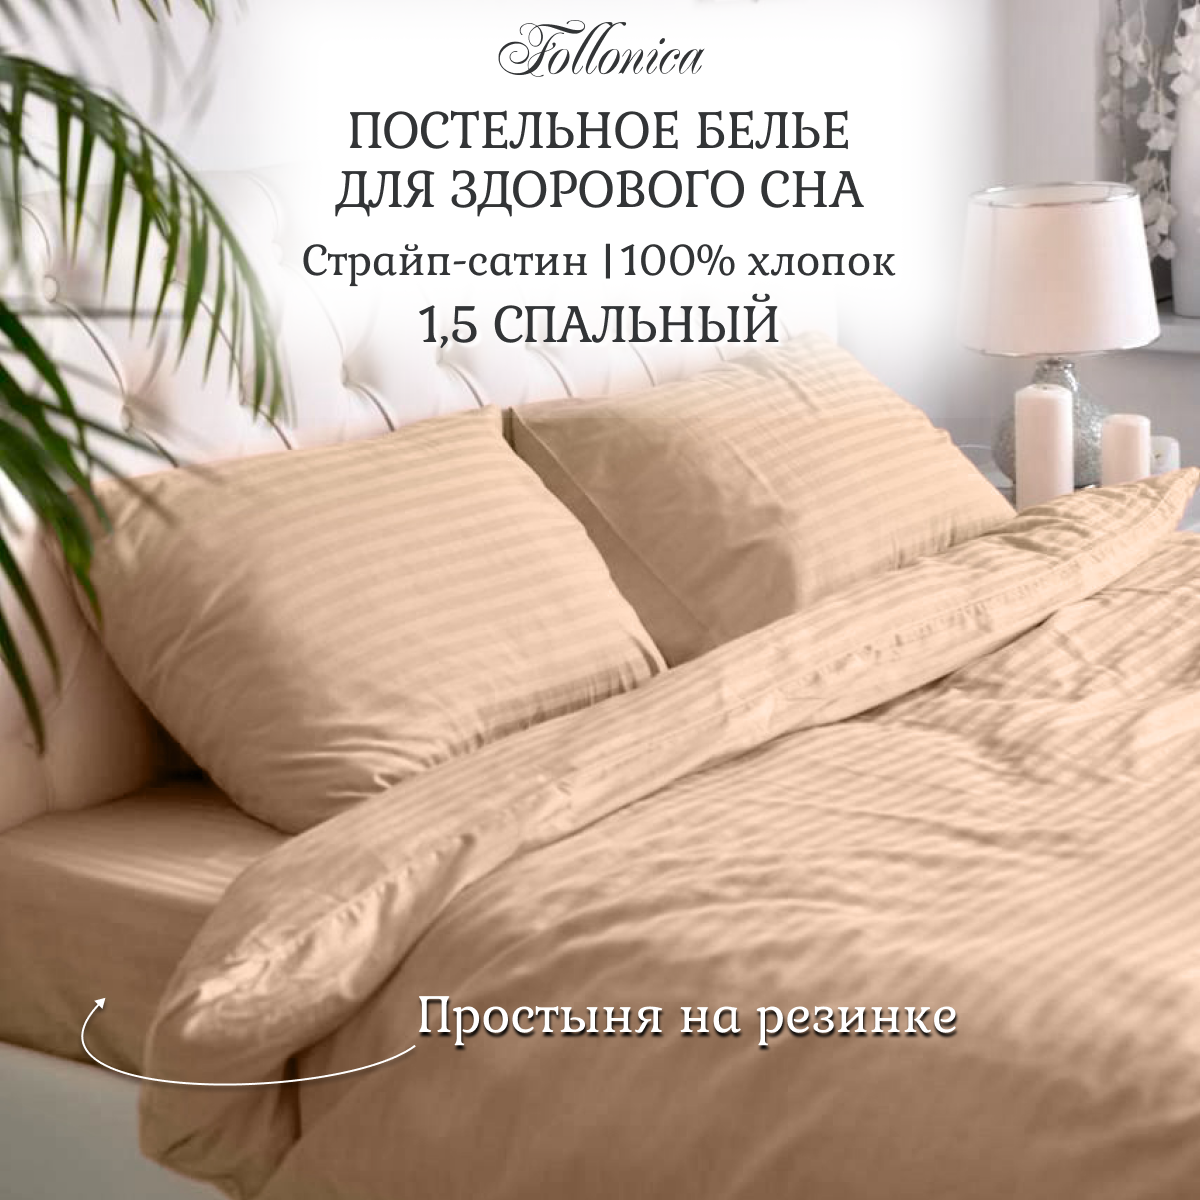 Постельное белье Follonica Stripe, размер 1,5 спальный, цвет бежевый